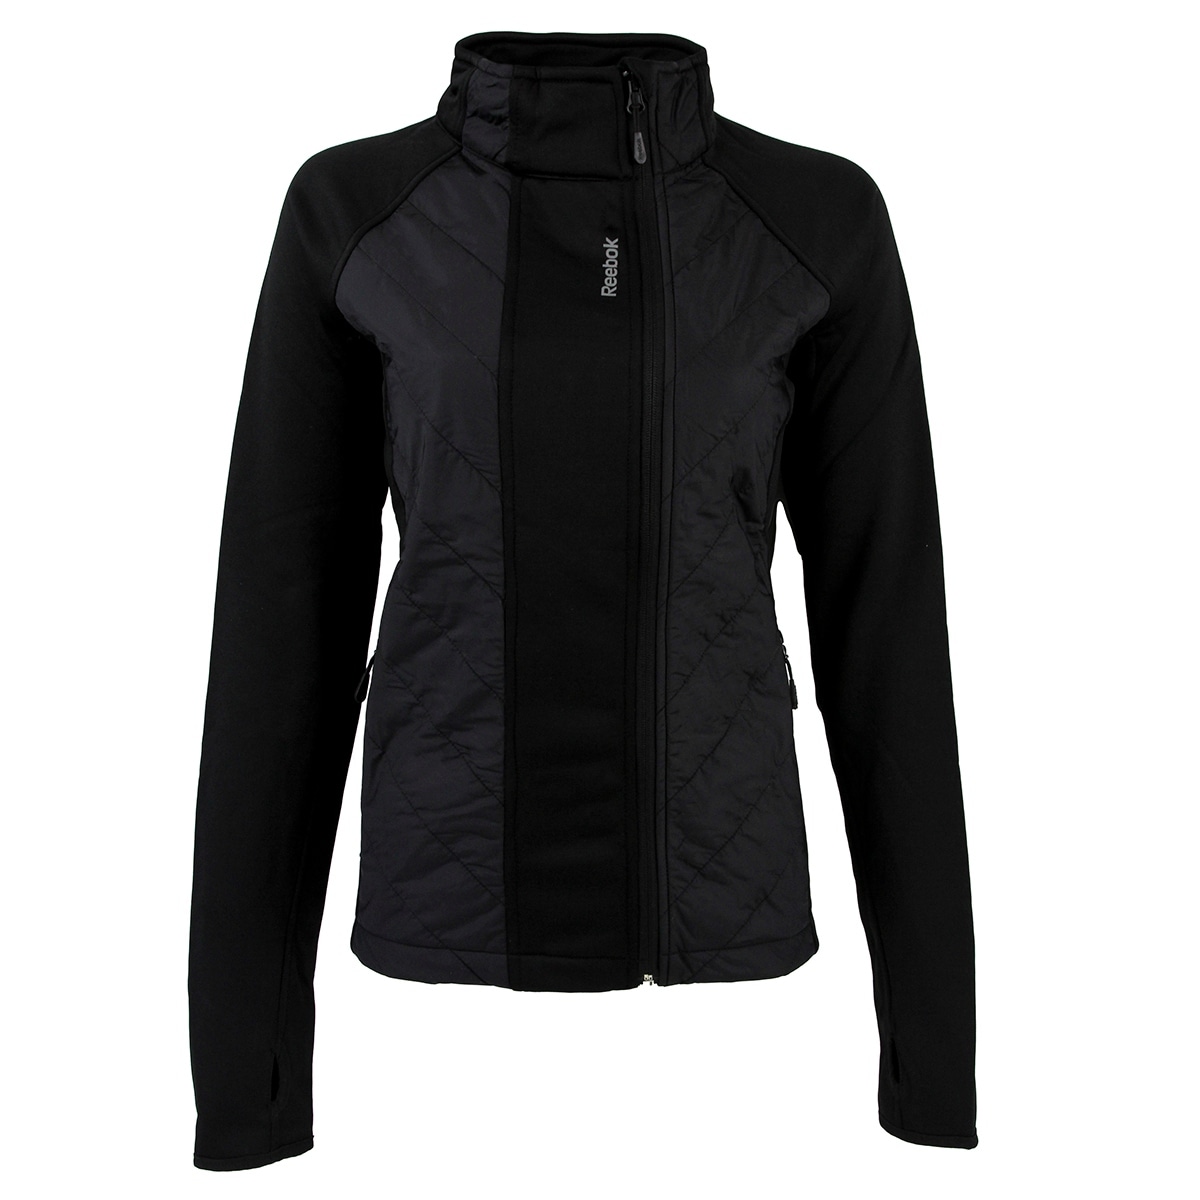 reebok women's alpine quilted jackets